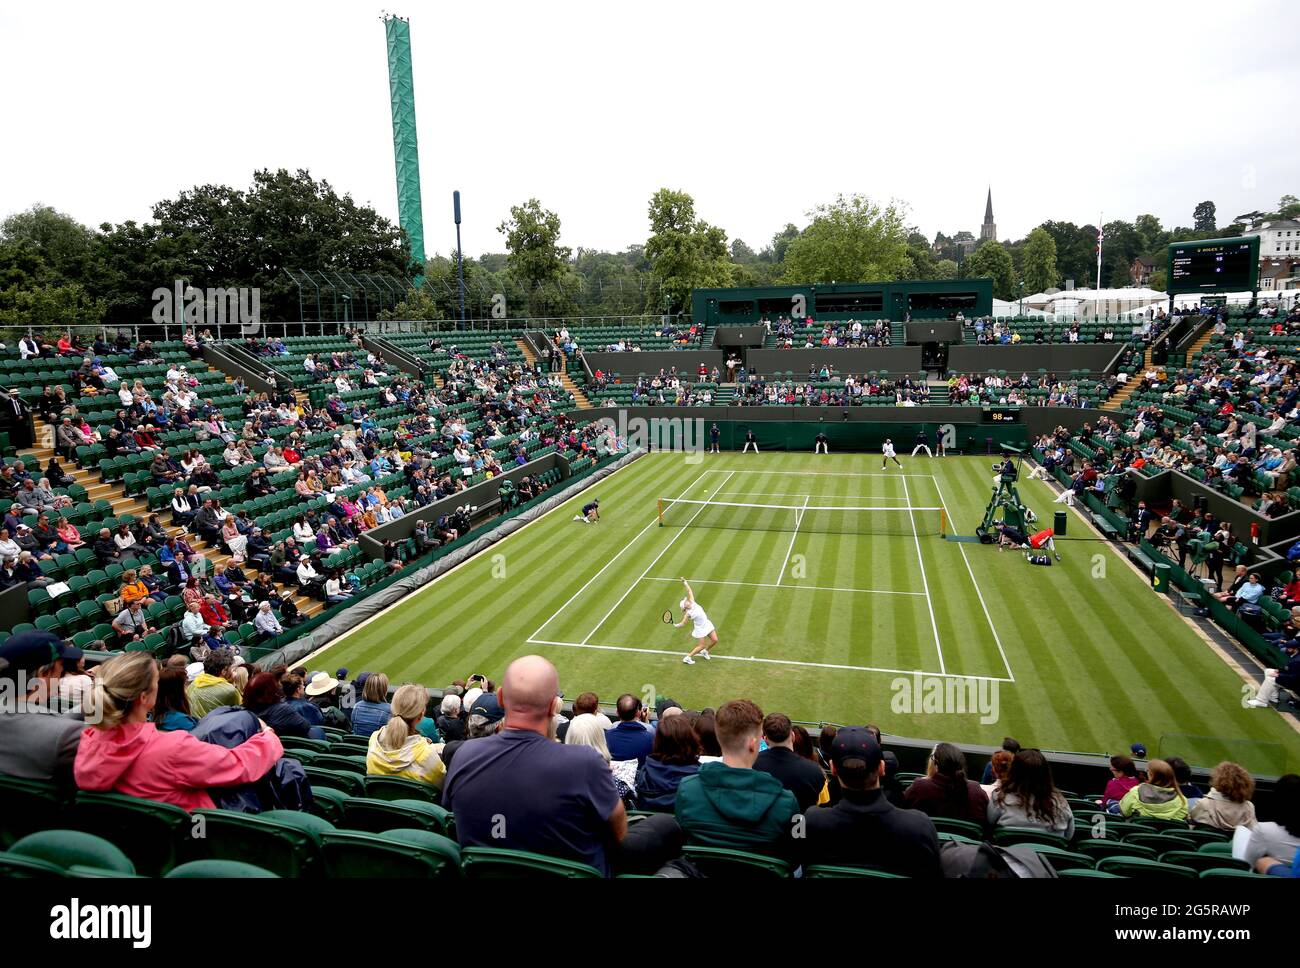 Am zweiten Tag von Wimbledon im All England Lawn Tennis and Croquet Club, Wimbledon, serviert Frau Jones während ihres ersten Damen-Einzelmatches gegen Coco Gauff auf dem Platz 2. Bilddatum: Dienstag, 29. Juni 2021. Stockfoto